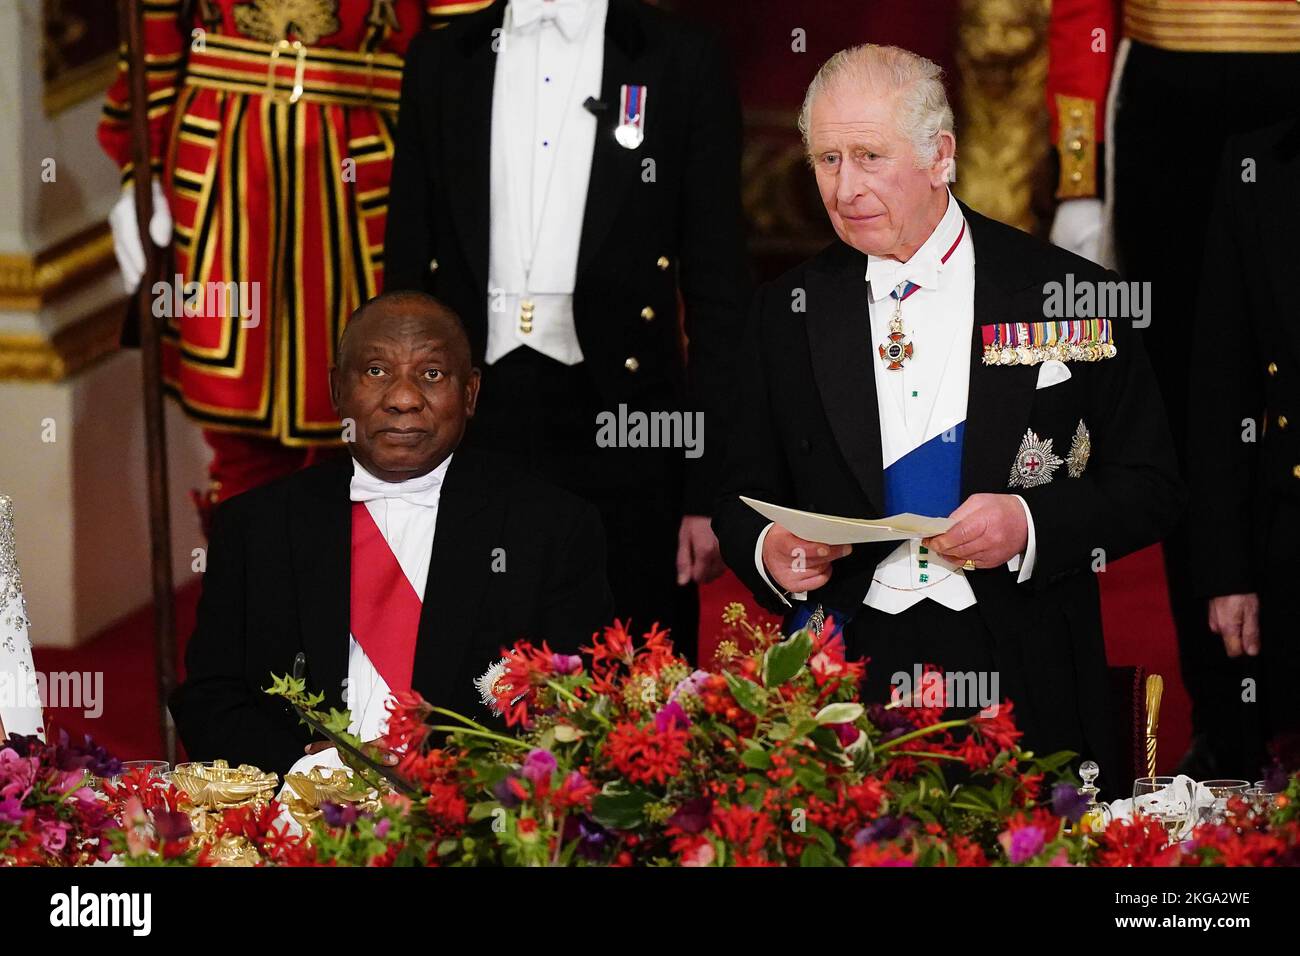 Le président Cyril Ramaphosa, d'Afrique du Sud, écoute le roi Charles III lors du banquet d'État qui s'est tenu au Palais de Buckingham, à Londres, lors de la visite d'État au Royaume-Uni par le président sud-africain. Date de la photo: Mardi 22 novembre 2022. Banque D'Images